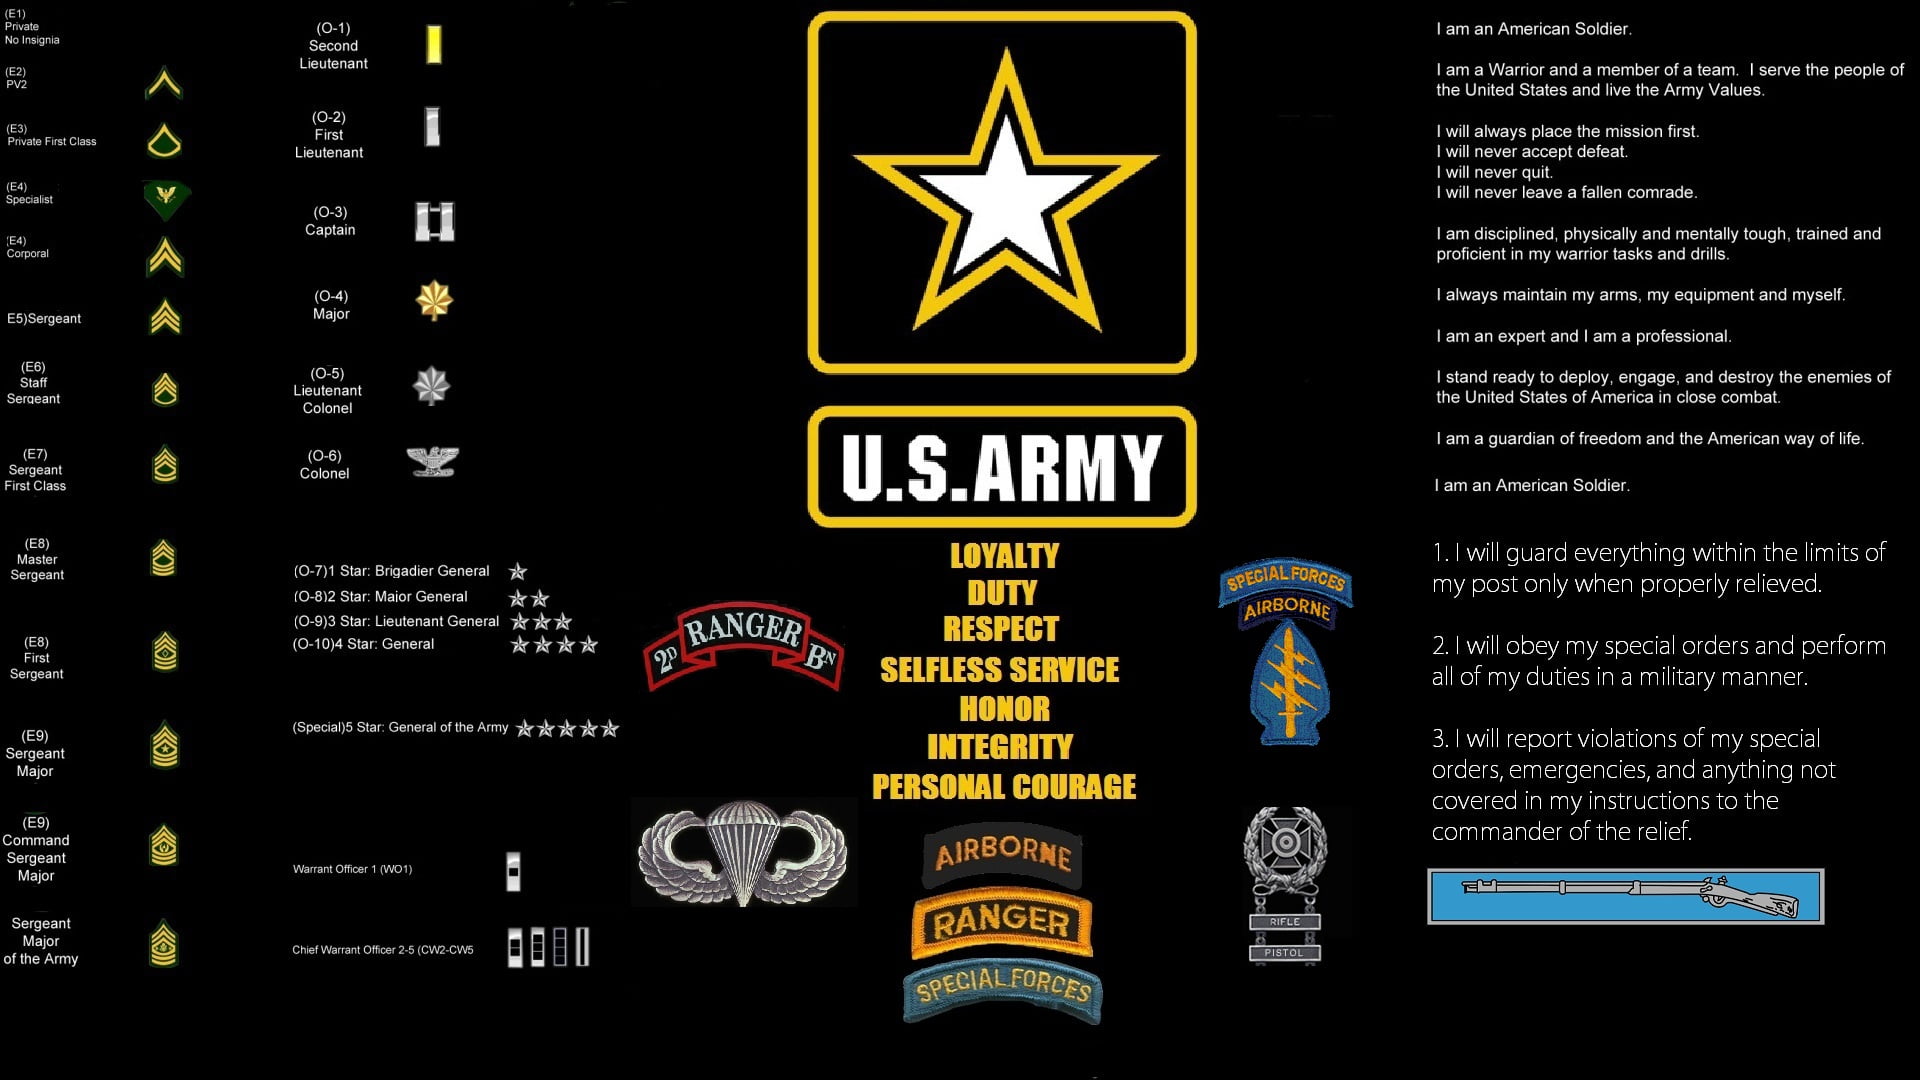 2560x1440 resolution | U.S. Army logo, army, United States Army, United ...